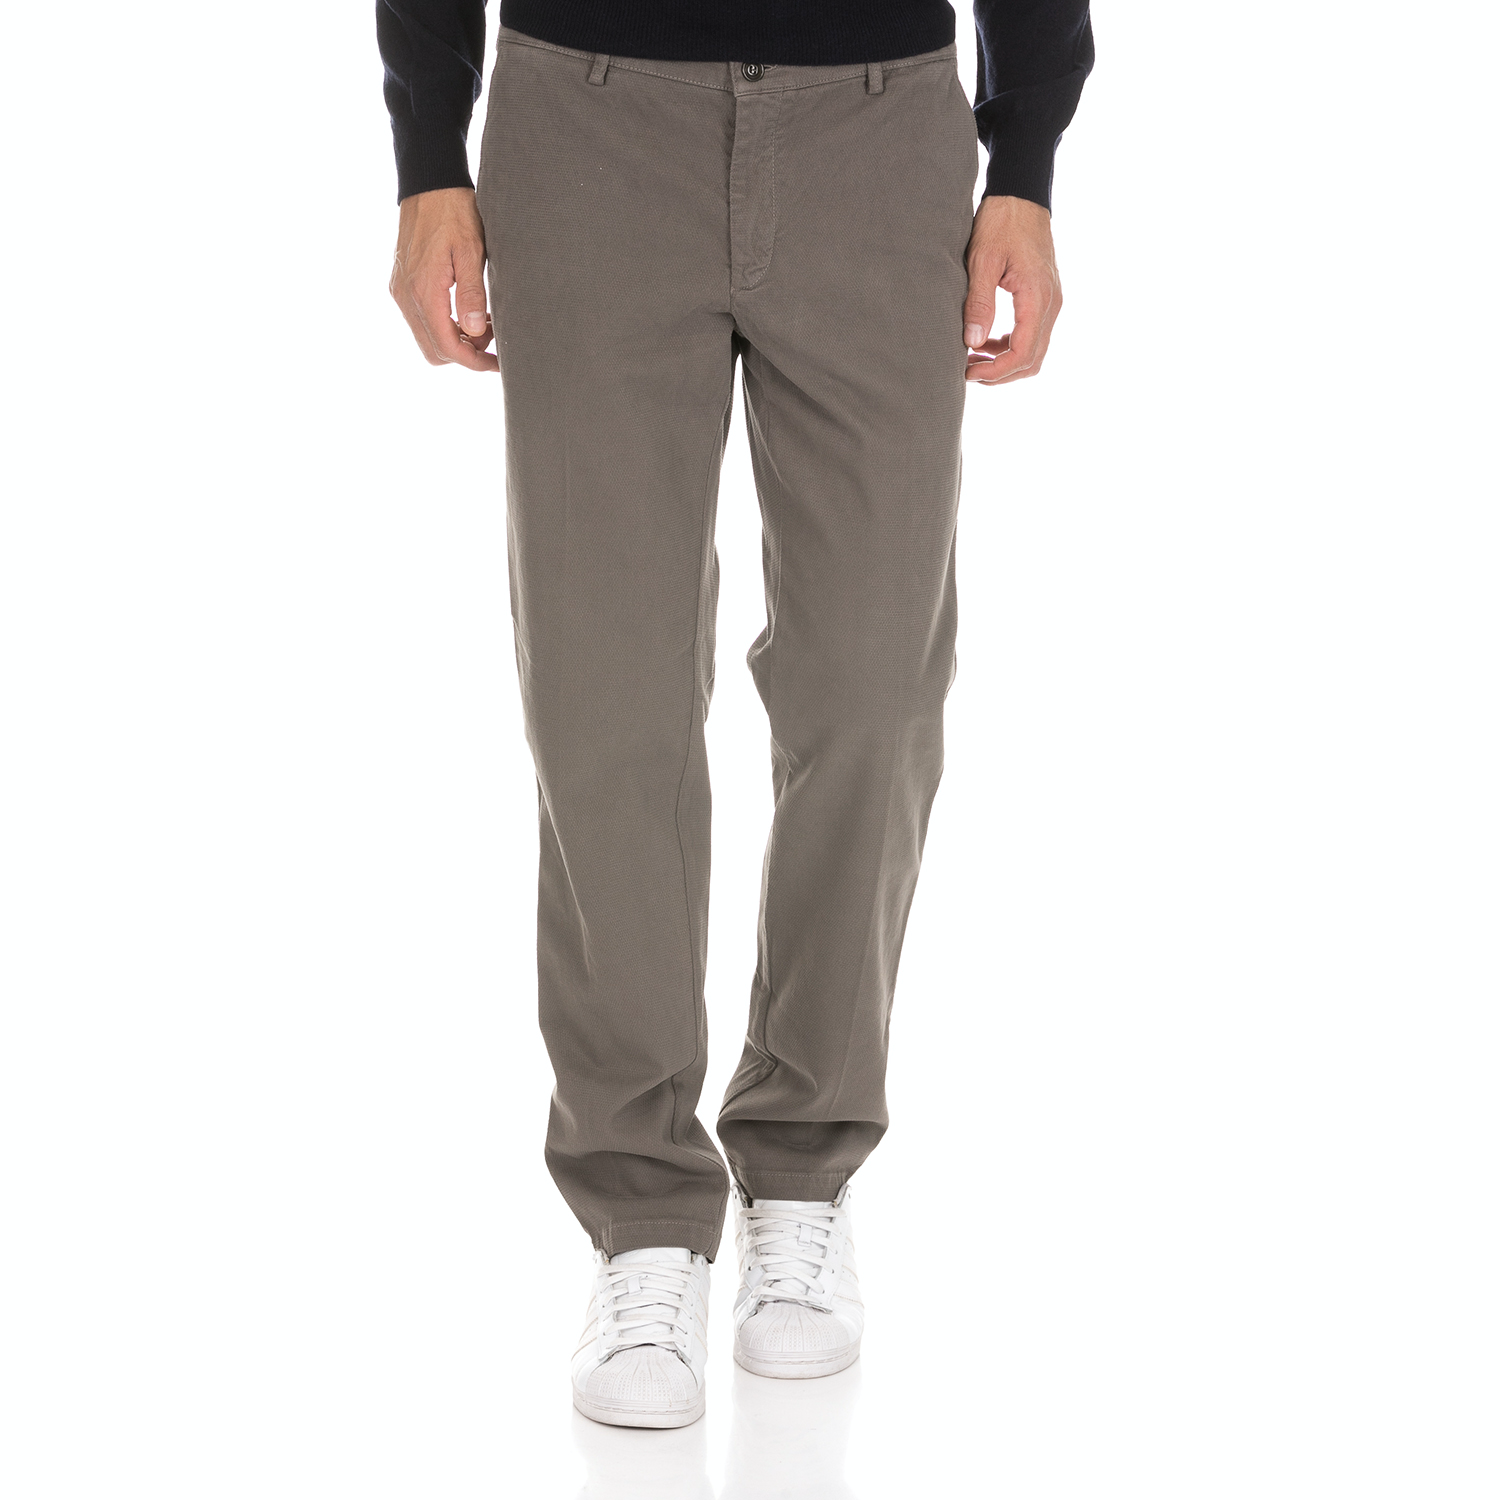 Ανδρικά/Ρούχα/Παντελόνια/Chinos BROOKSFIELD - Ανδρικό παντελόνι BROOKSFIELD CHINO PANTS μπεζ